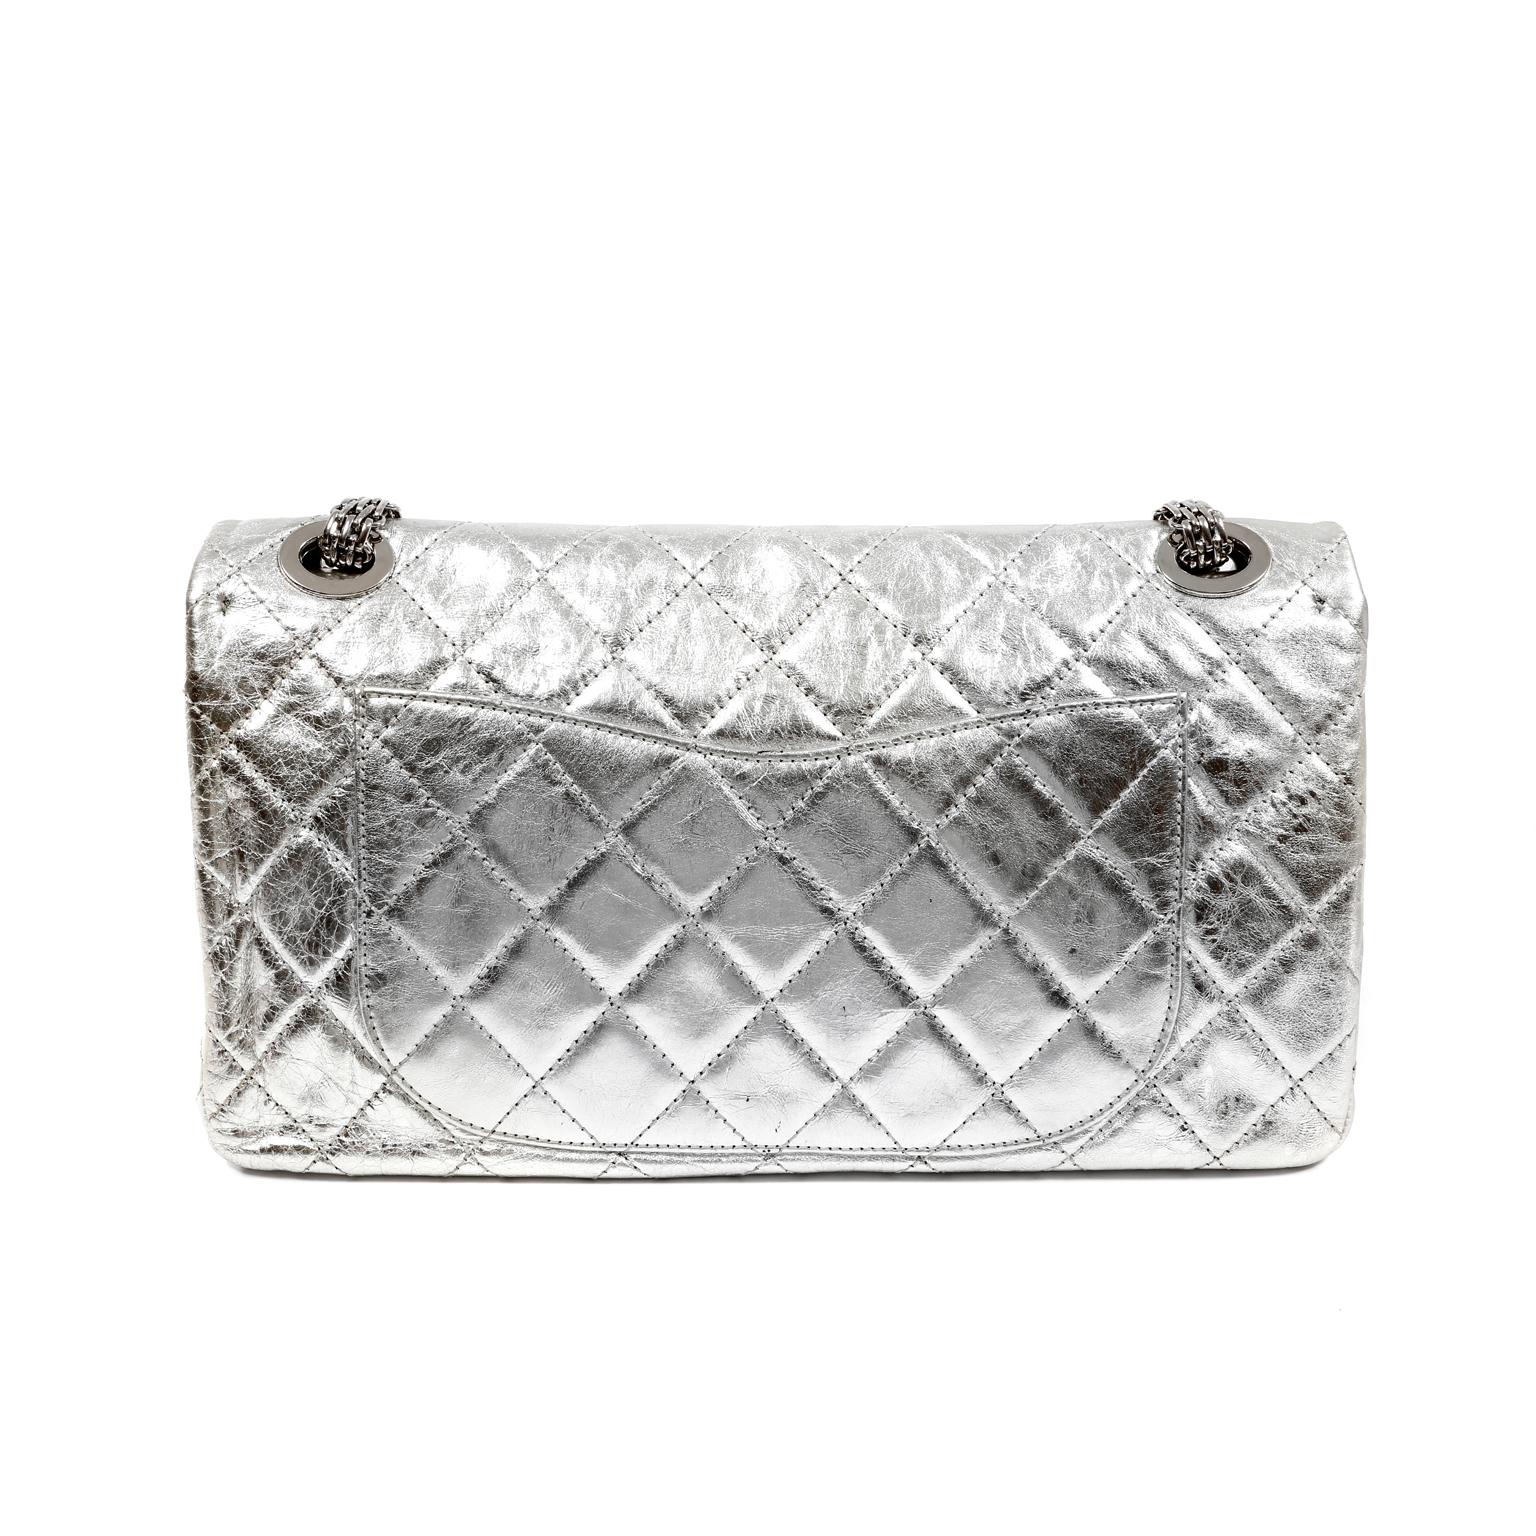 Diese authentische Chanel Metallic Silver 2.55 Reissue Flap Bag ist in ausgezeichnetem Zustand.  Die größte Silhouette der Neuauflage ist mit 228 geräumig, aber nicht erdrückend.
Das absichtlich in Mitleidenschaft gezogene silberfarbene Kalbsleder